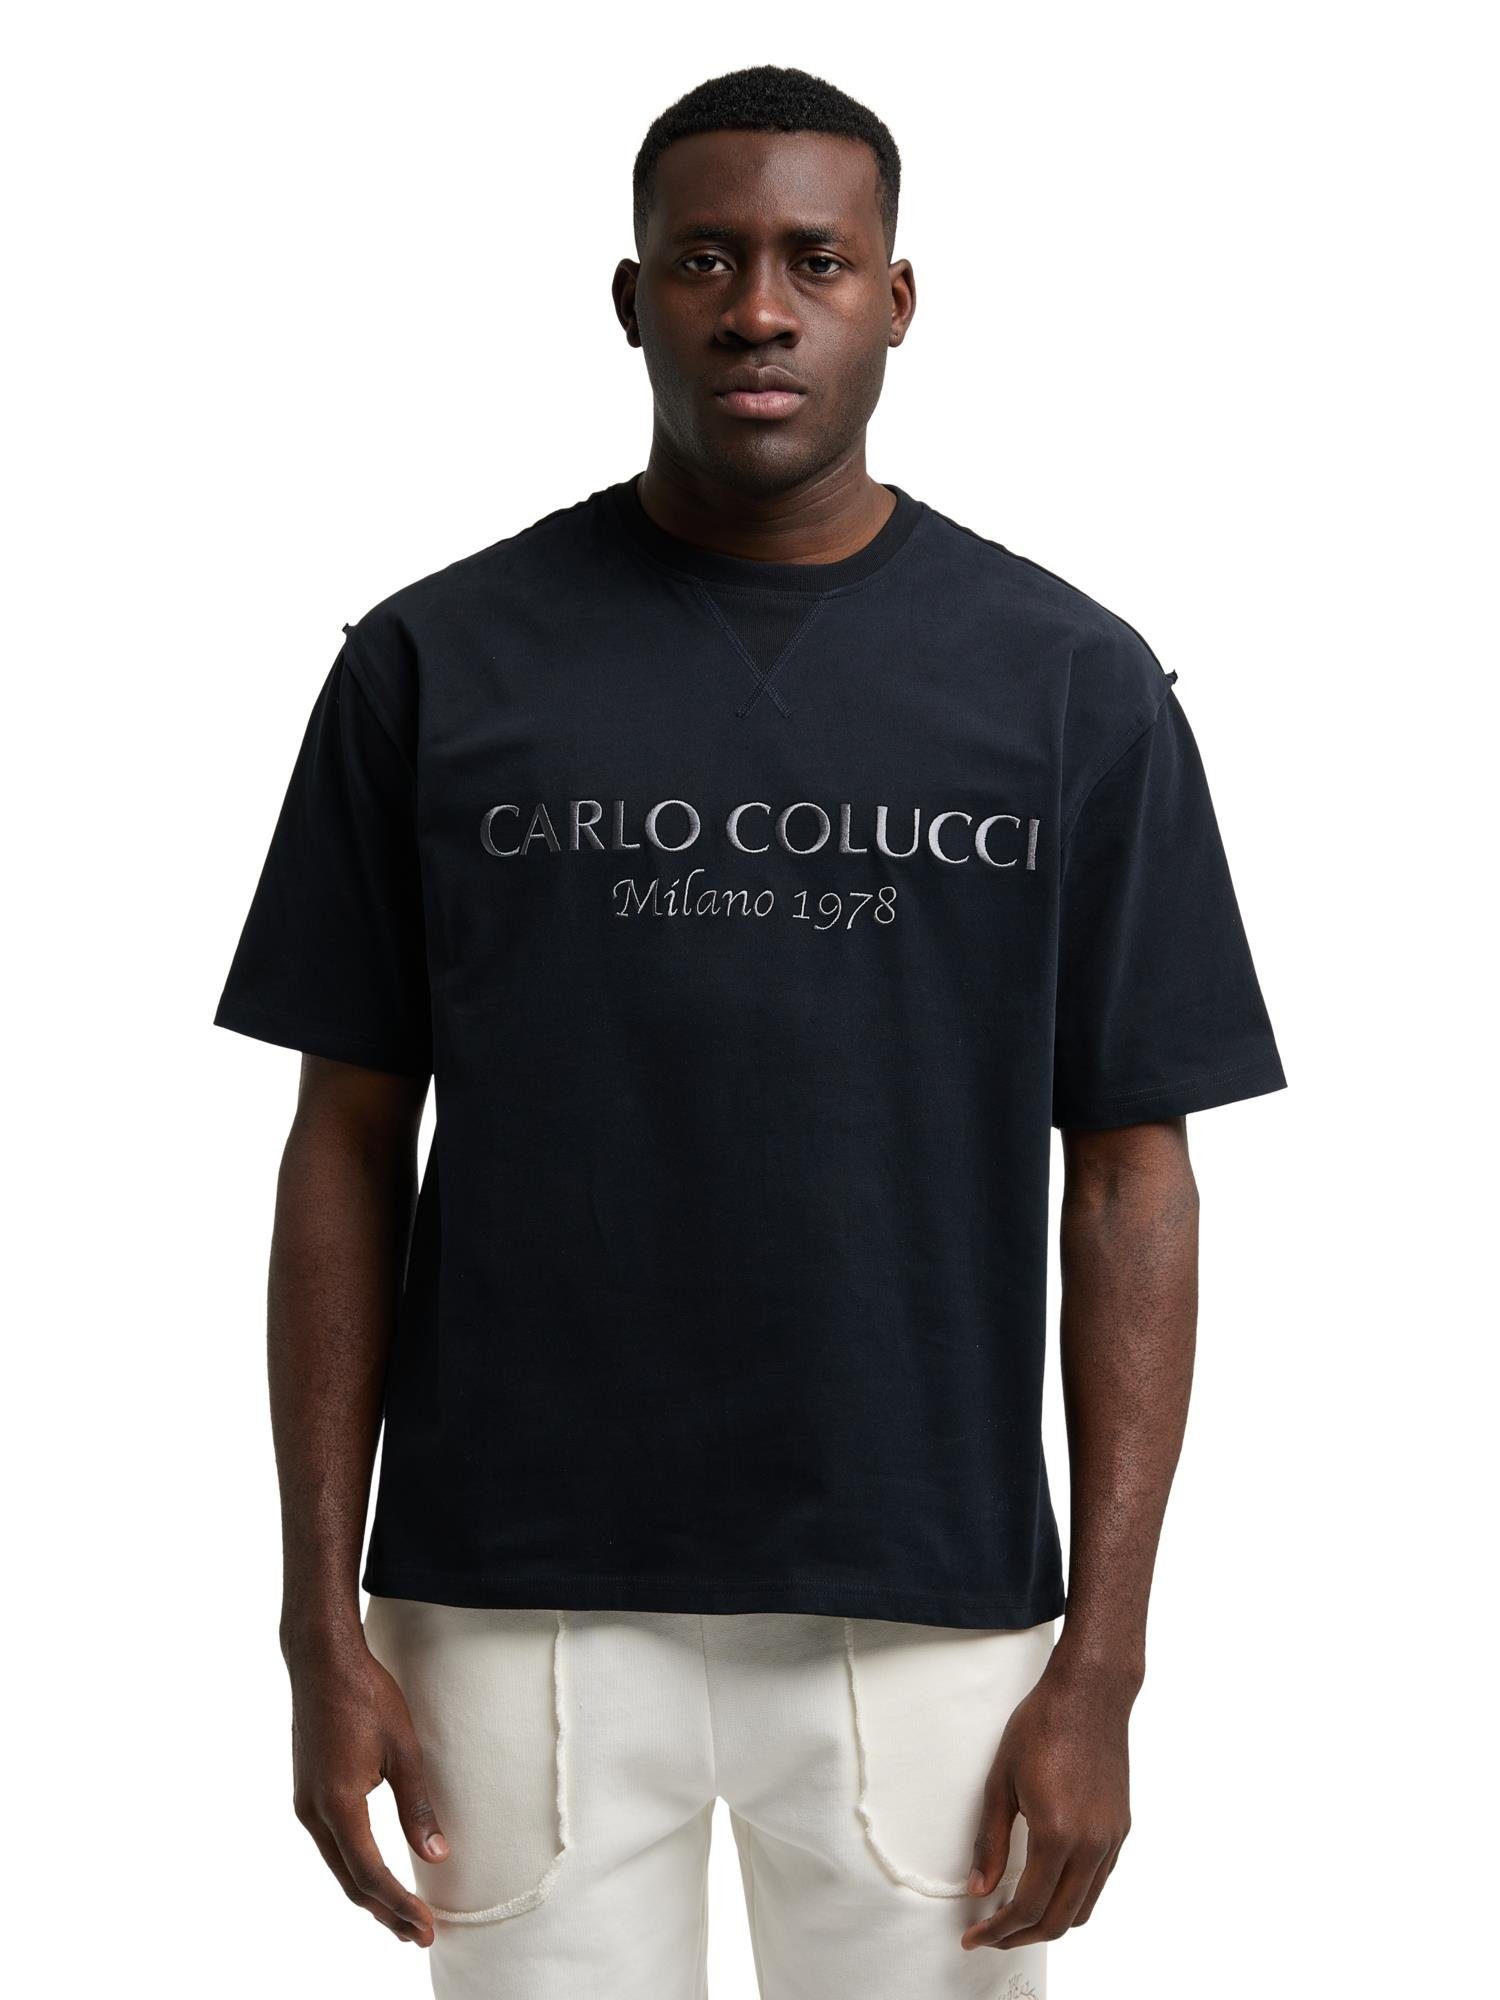 CARLO COLUCCI T-Shirt De Caminada Schwarz